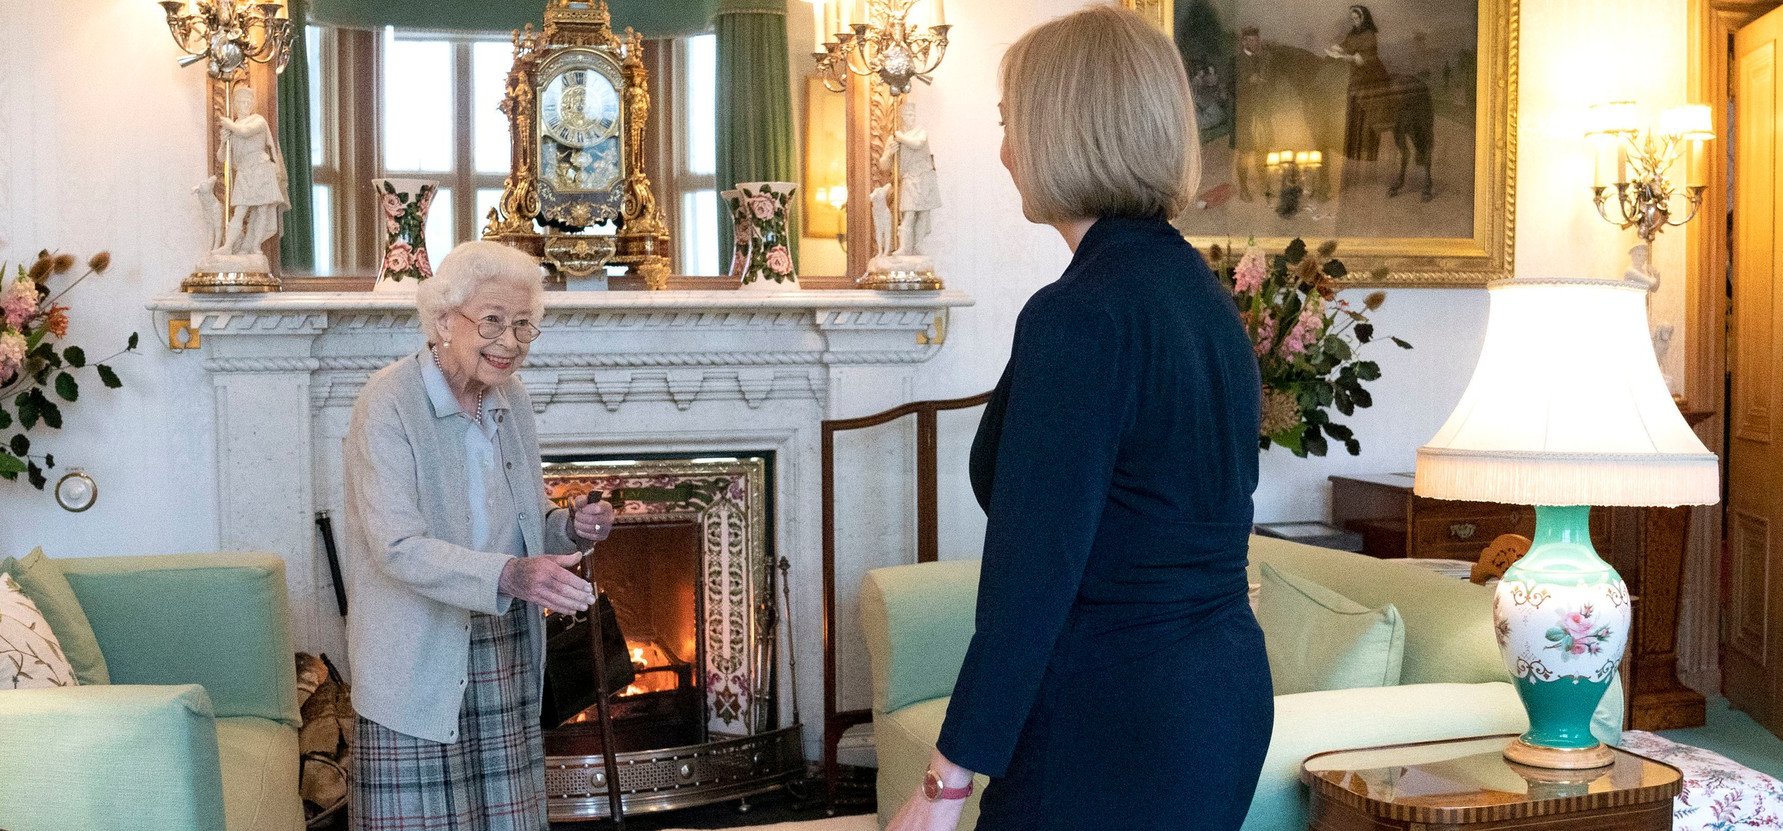 Szégyenletesnek nevezte Erzsébet királynőt az új brit miniszterelnök – kínos lehetett a találkozójuk